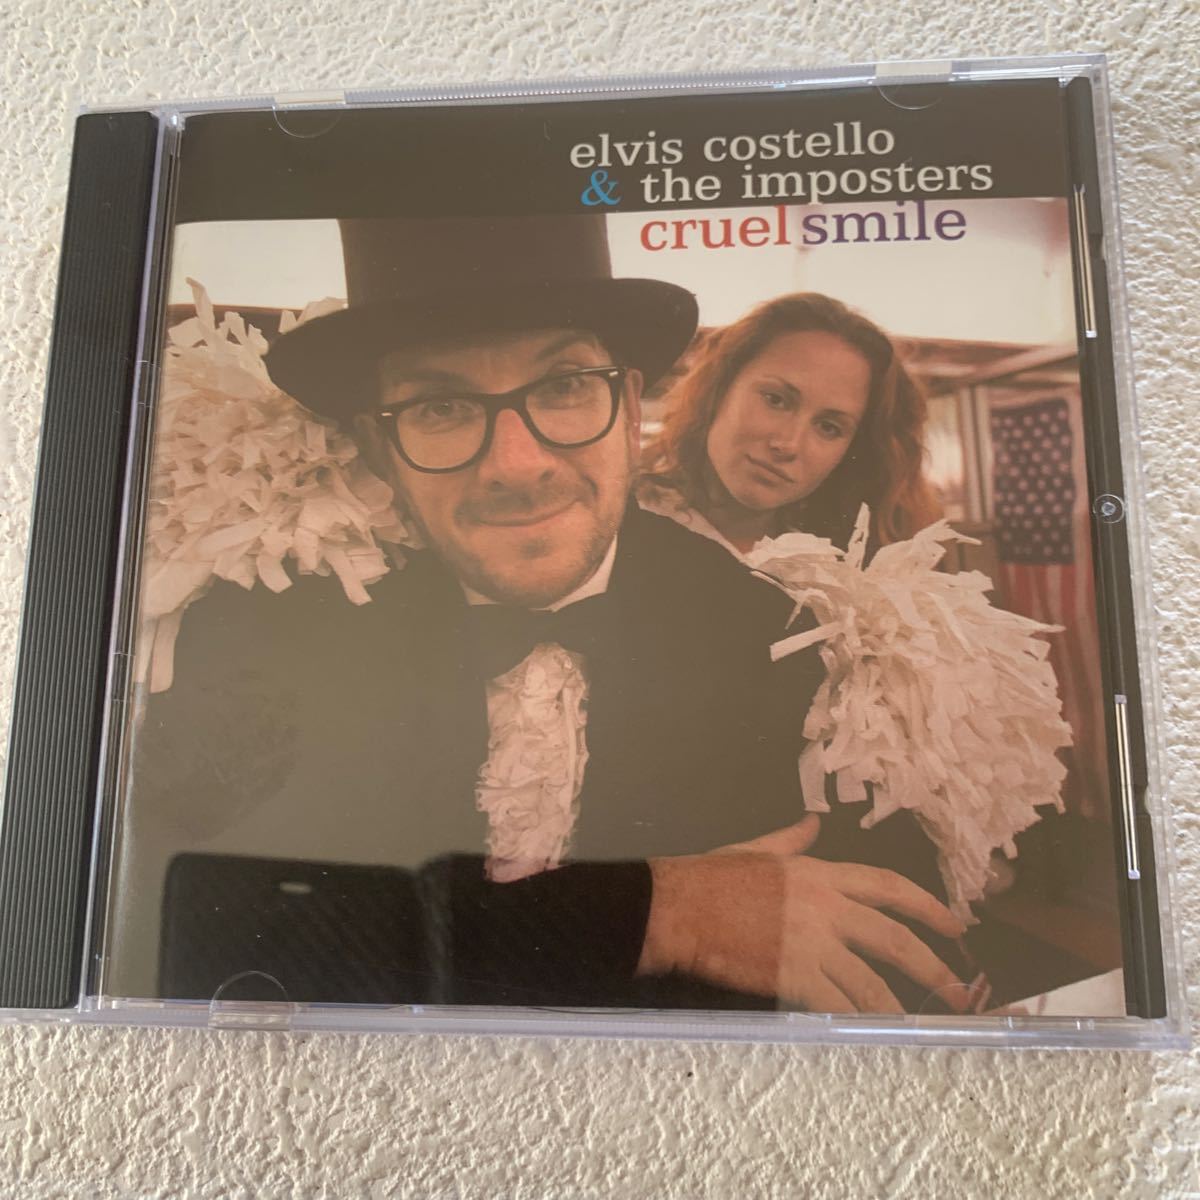 elvis costello & the imposters cruel smile エルヴィス コステロ アンド ザ インポスターズによるコンピレーション アルバム中古CD_画像1